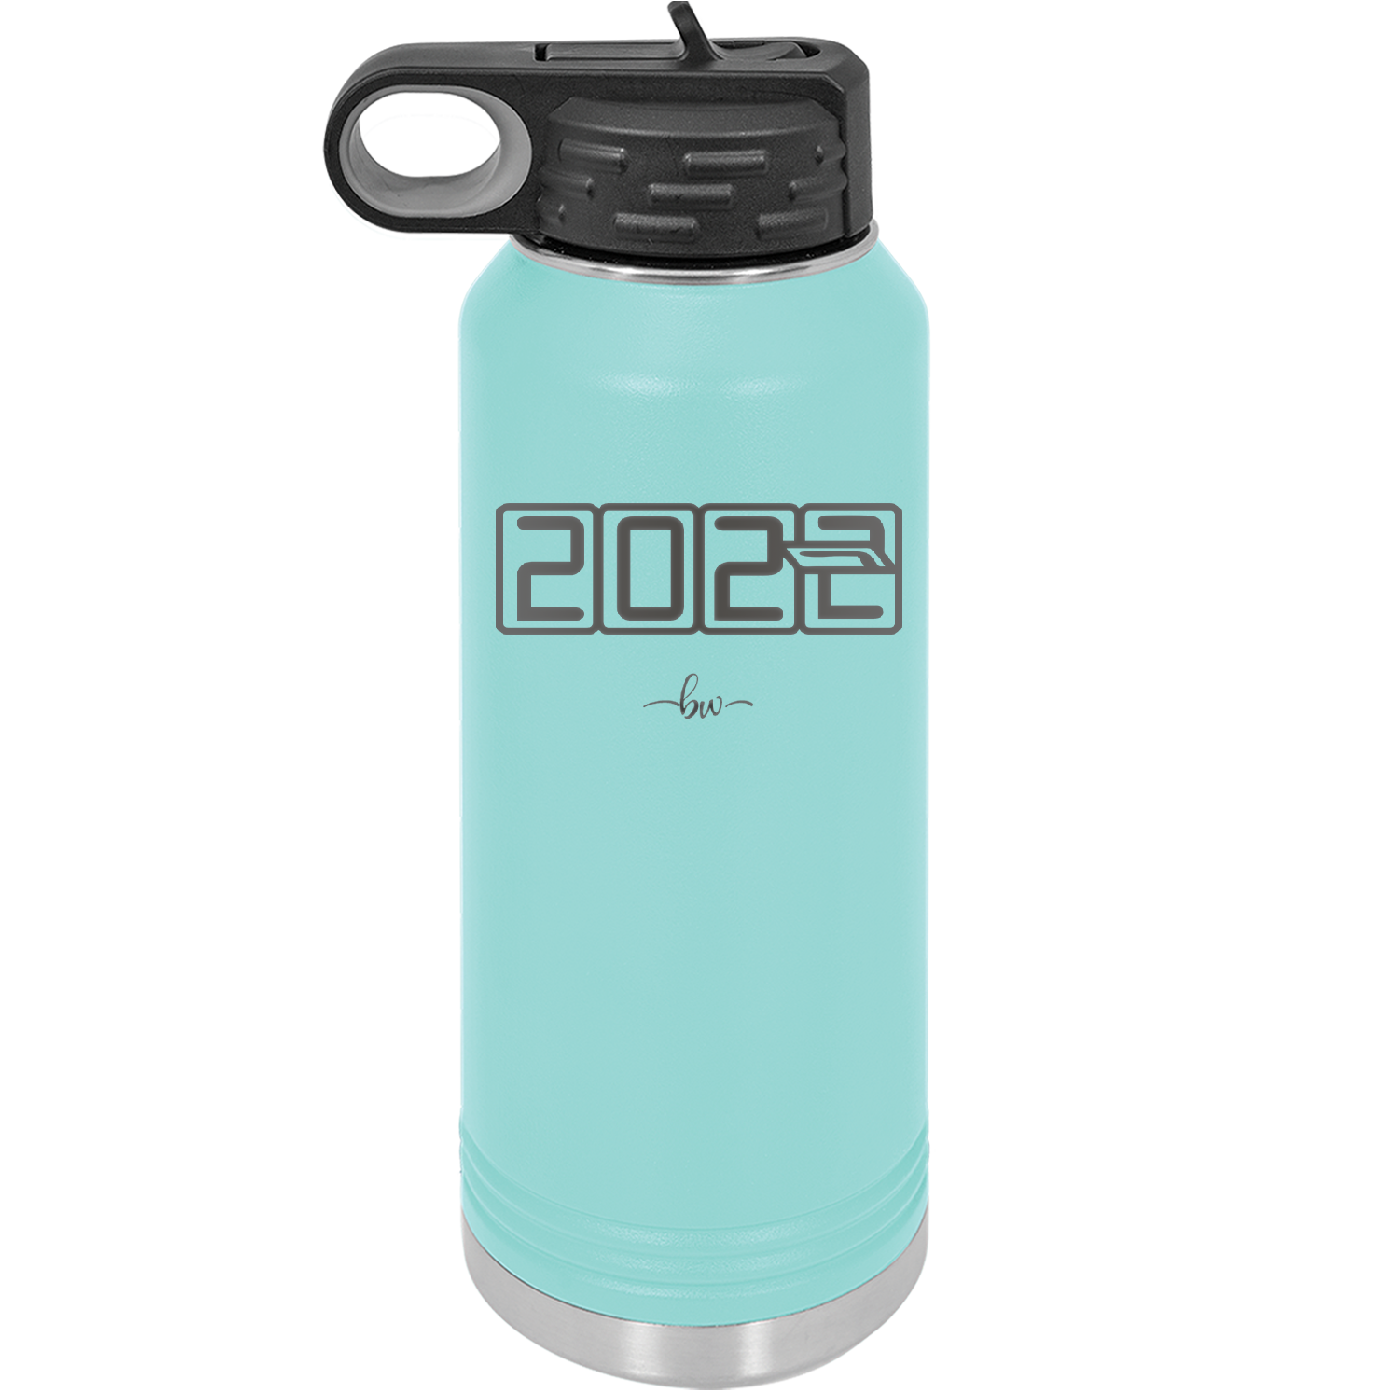 32 oz water bottle 2023 countdown-  seafoam